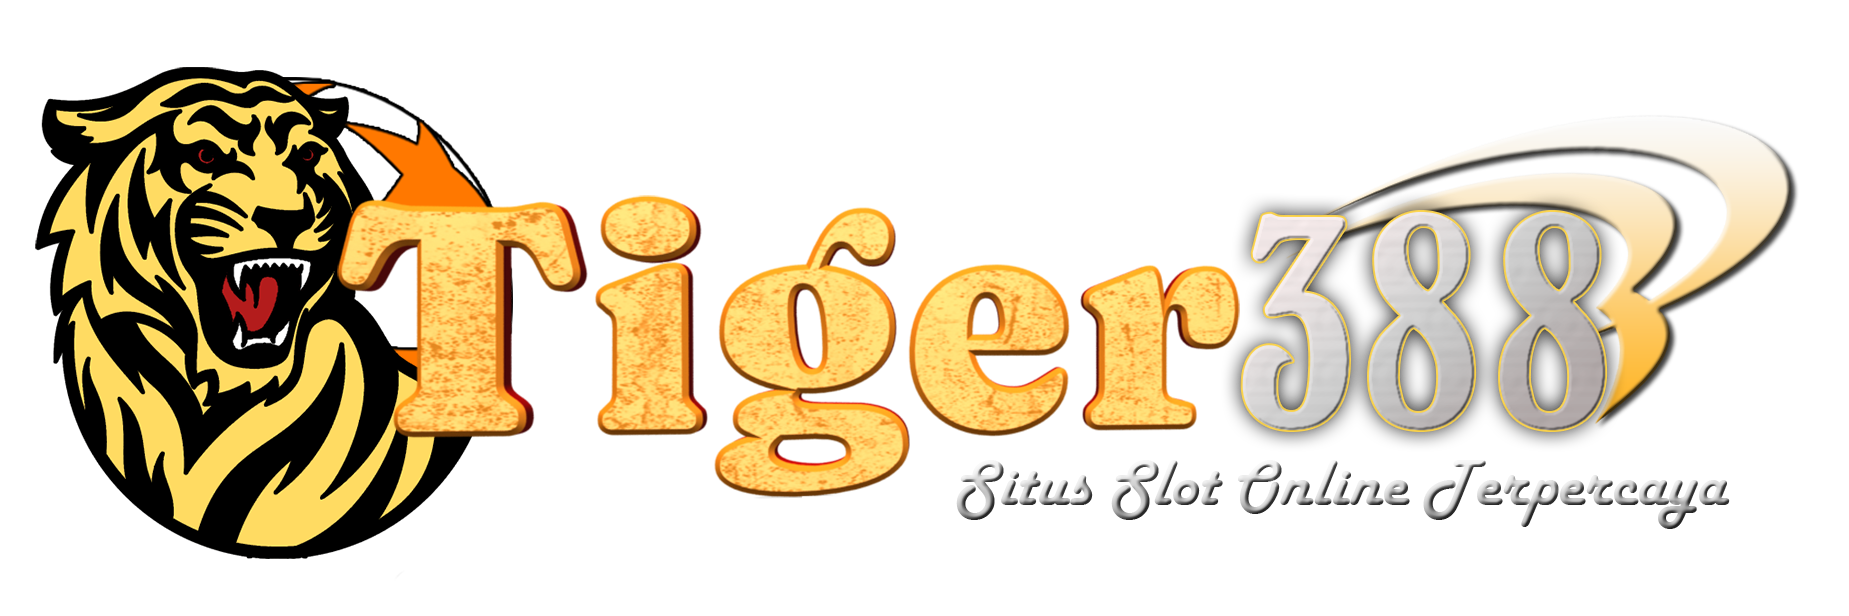 Tiger388